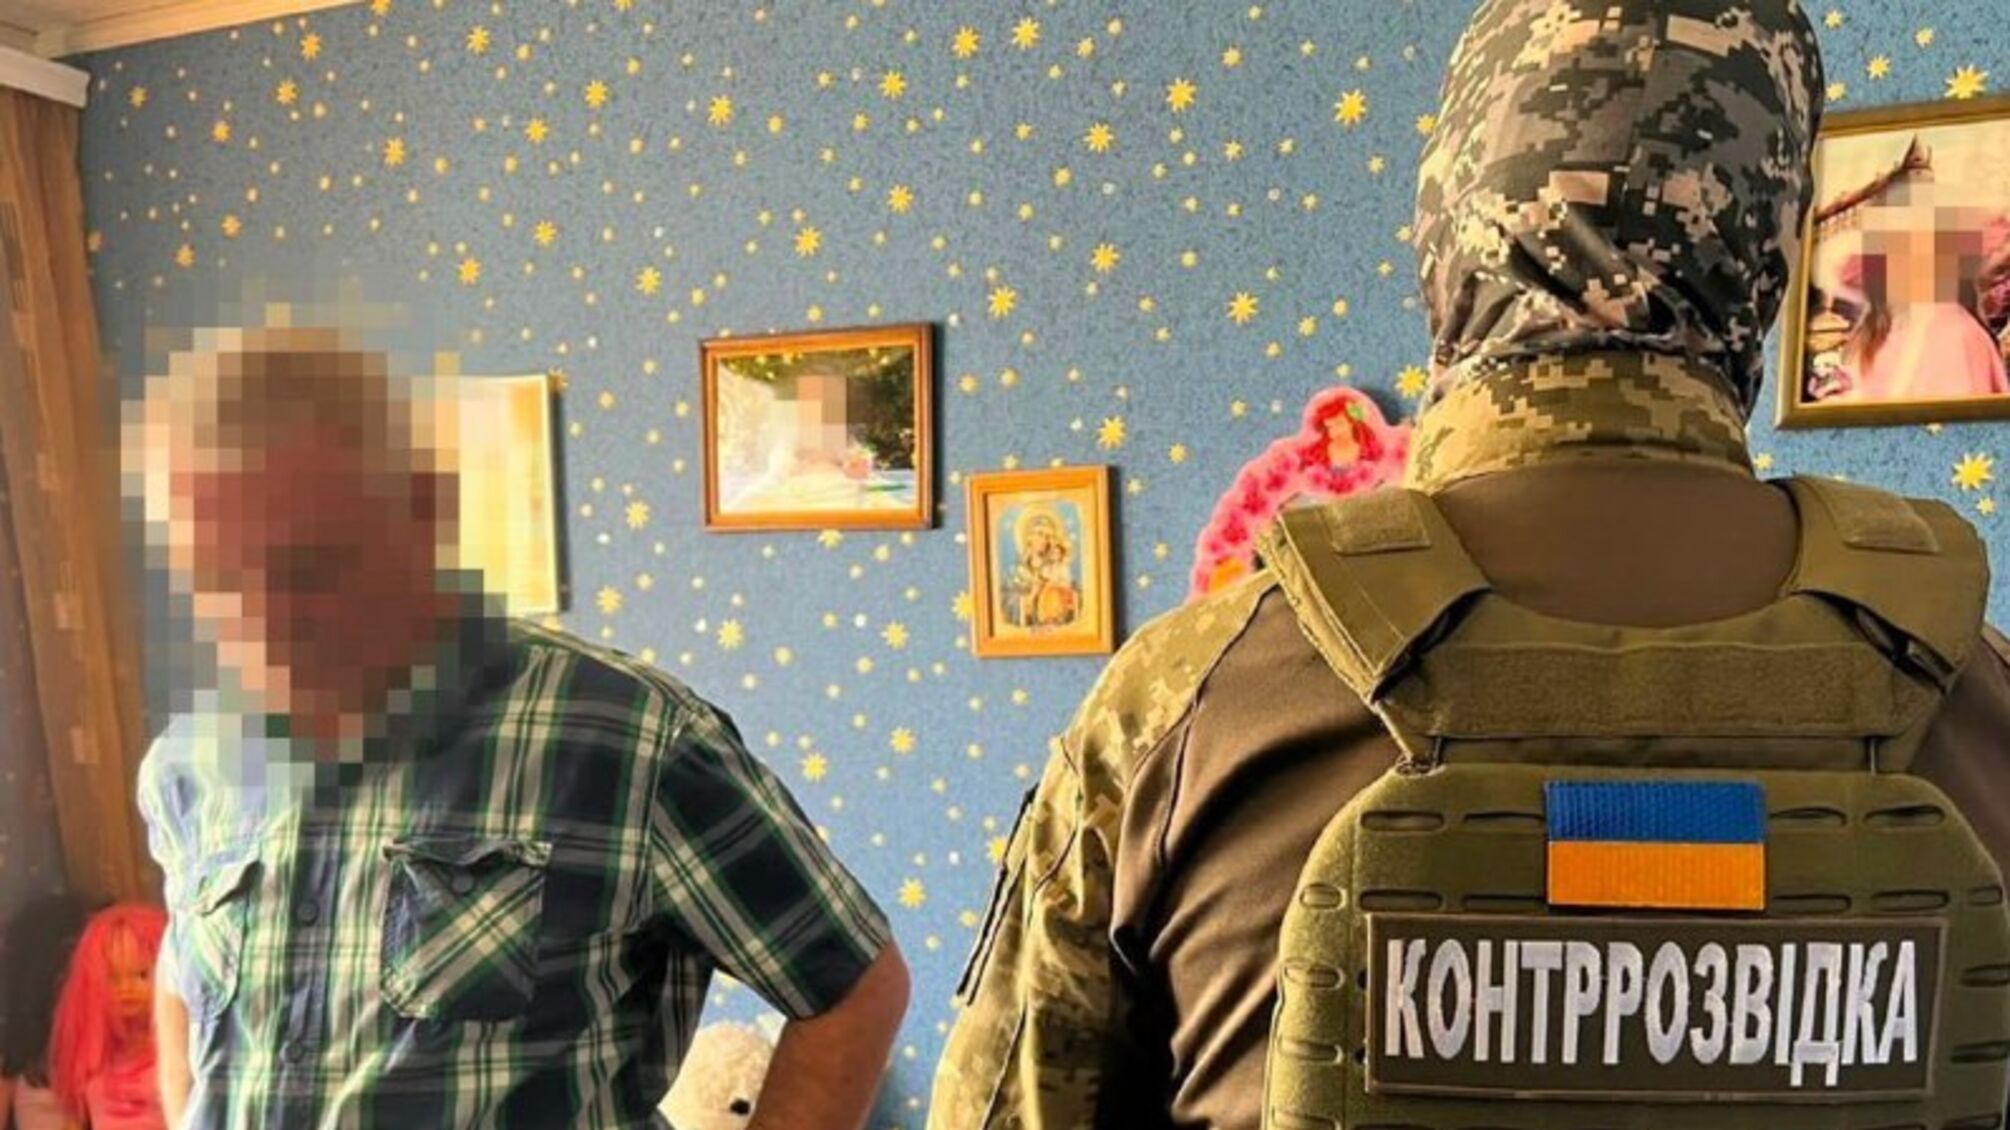 Агент ФСБ ховав зброю під дитяим ліжком для вчинення терактів на Запоріжжі